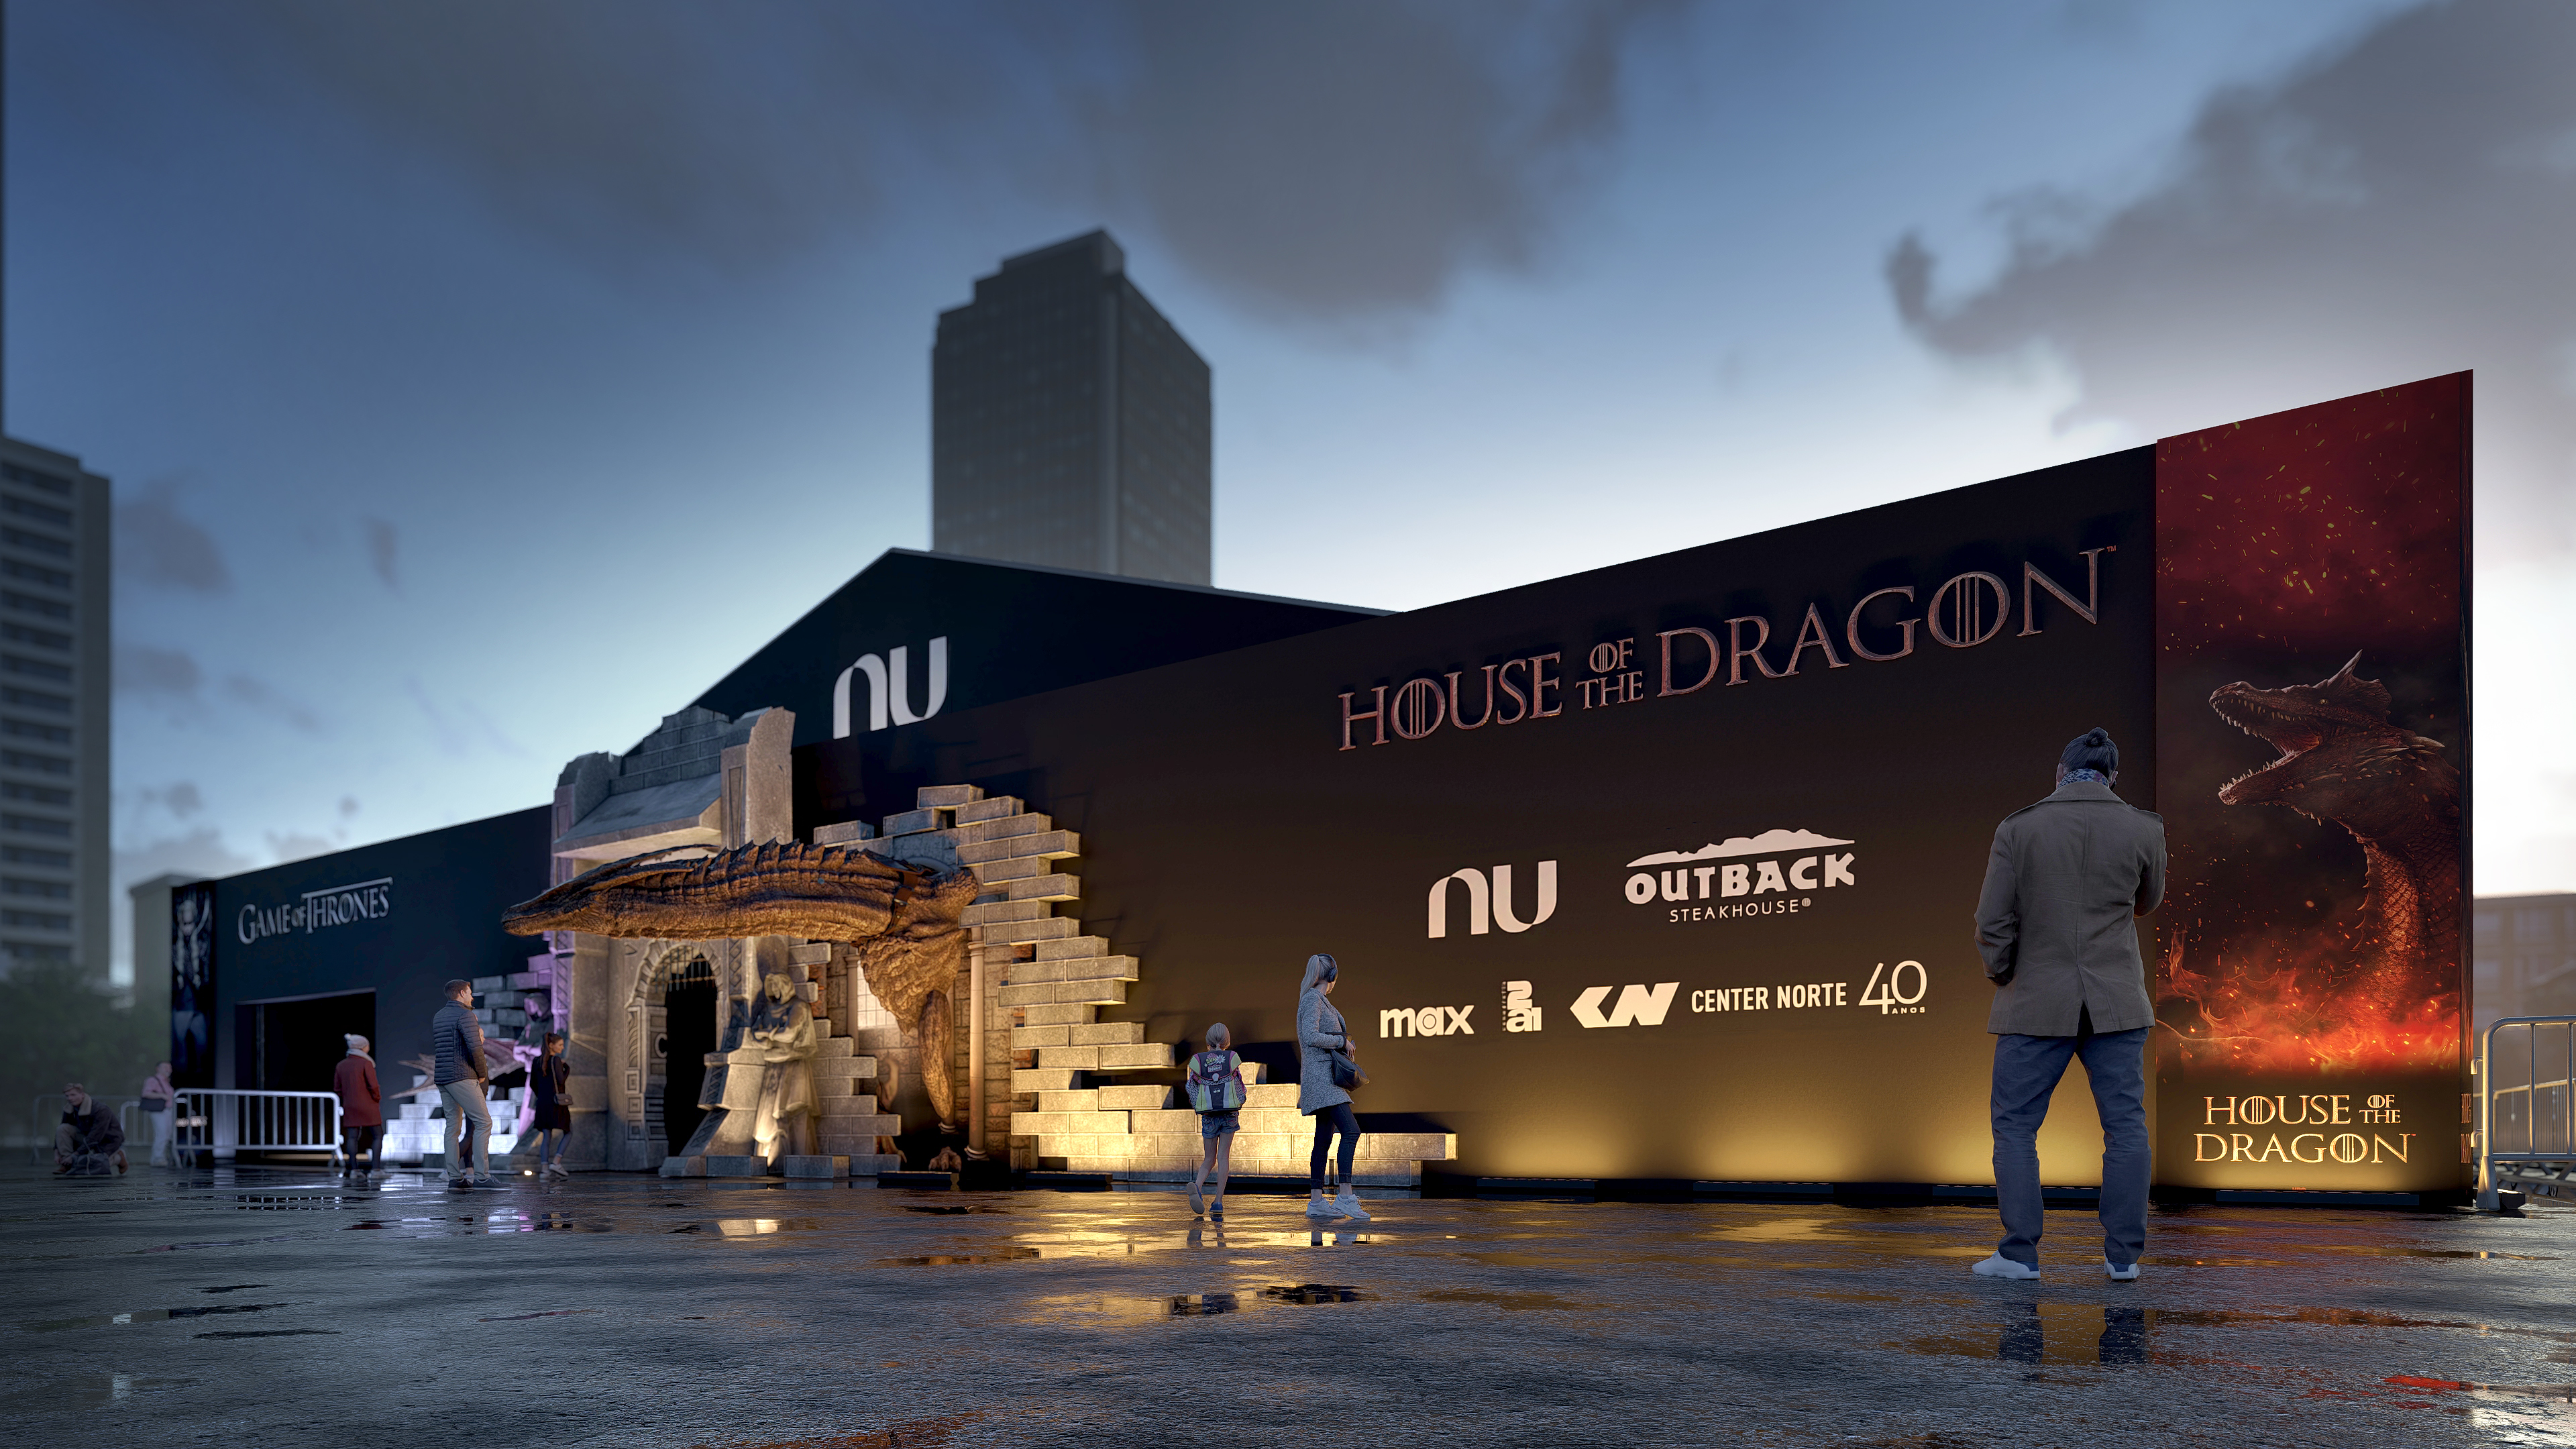 A imagem retrata a entrada da exposição Game of Thrones & House of the Dragon Experience, com uma arco de pedras e uma dragão na porta. Os nomes das séries e os patrocinadores estão dispostos ao lado, em uma parede de fundo marrom.